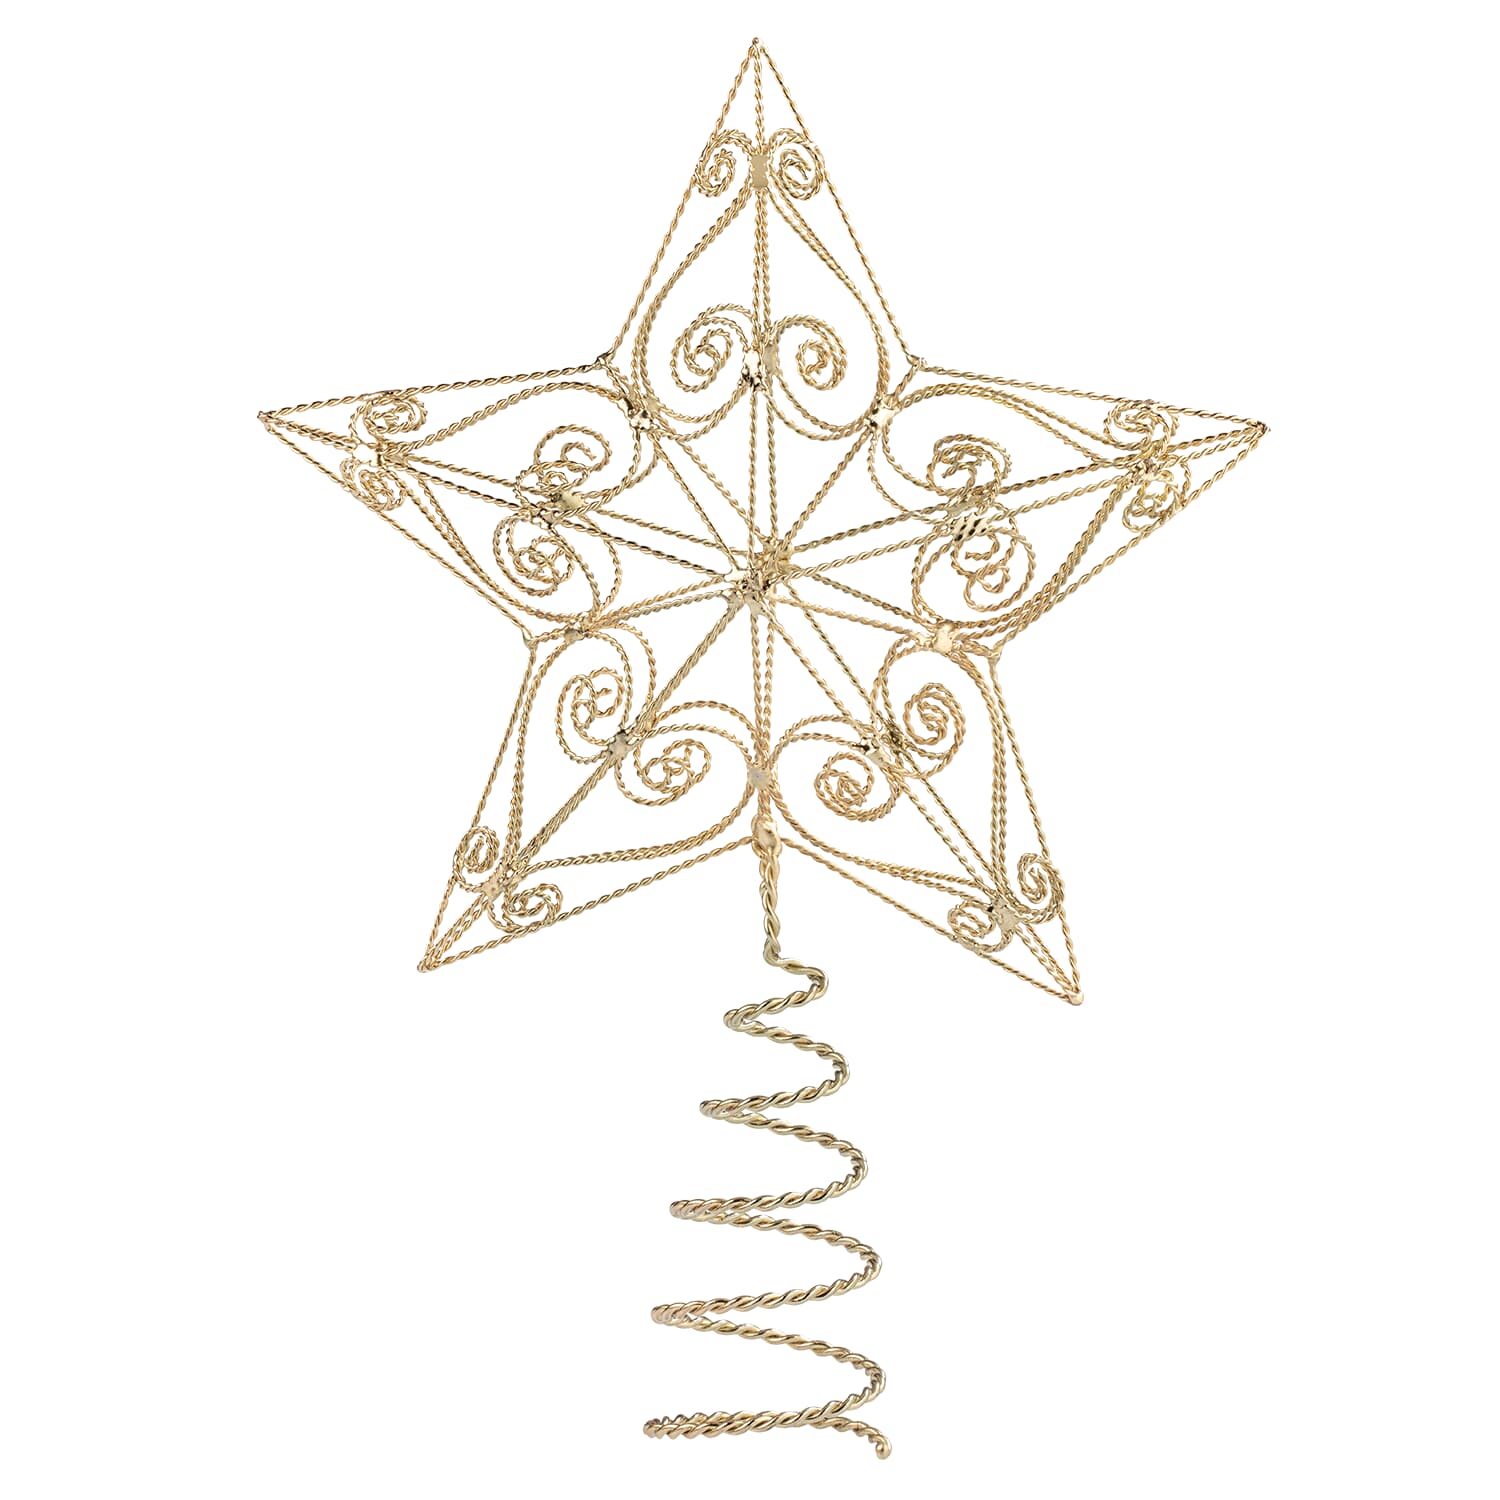 christmas tree star topper clip art